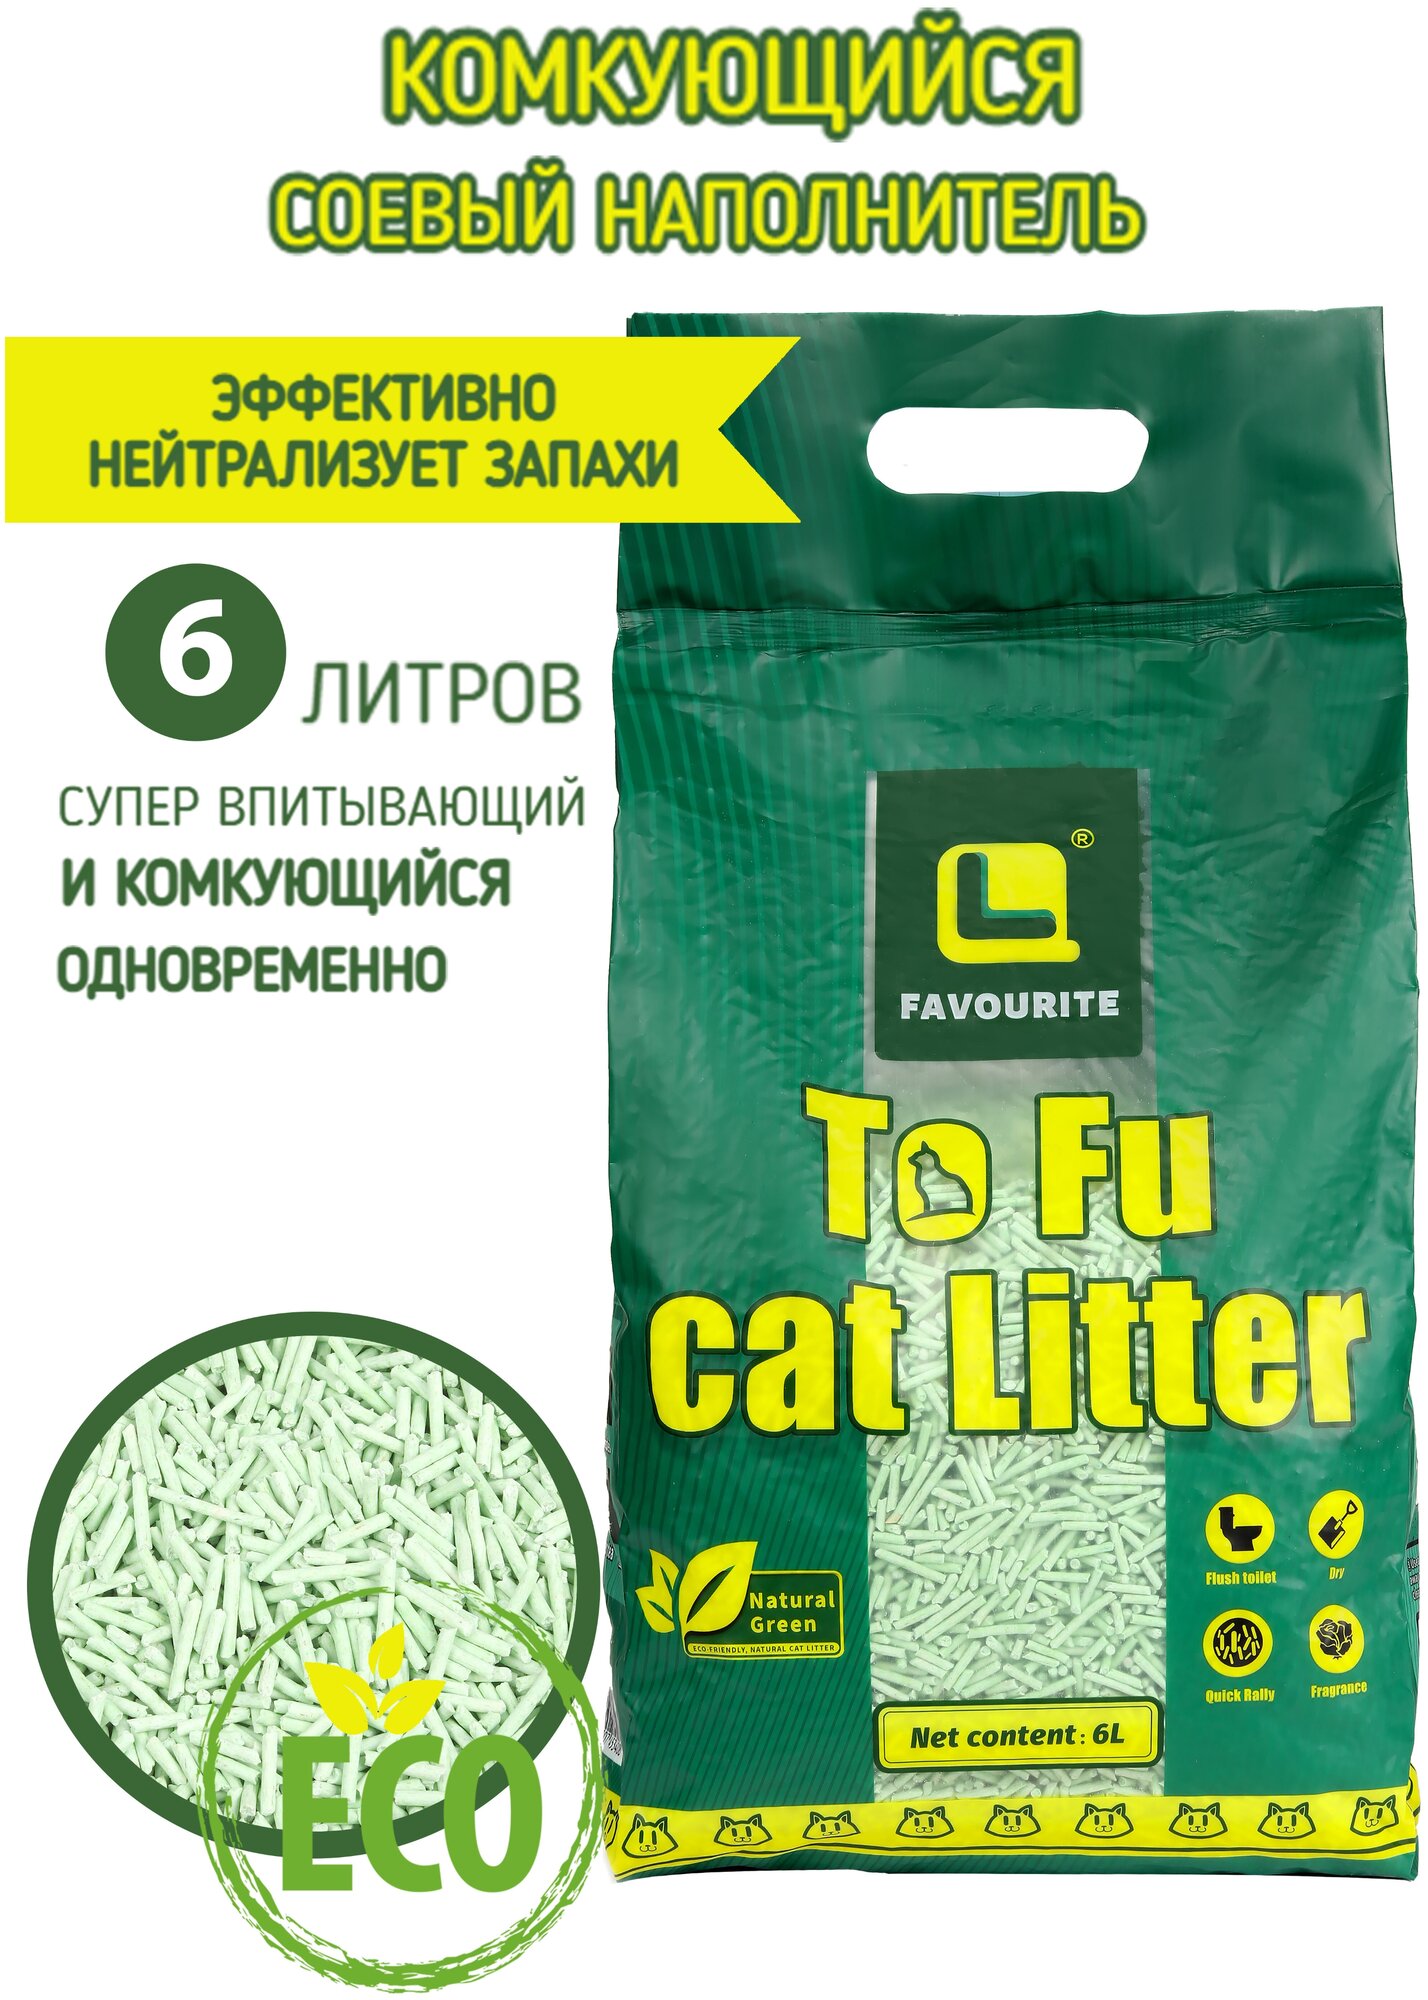 Наполнитель комкующийся для кошачьего туалета тофу (tofu) зеленый чай, премиум класса, беспыльный, 6 литров